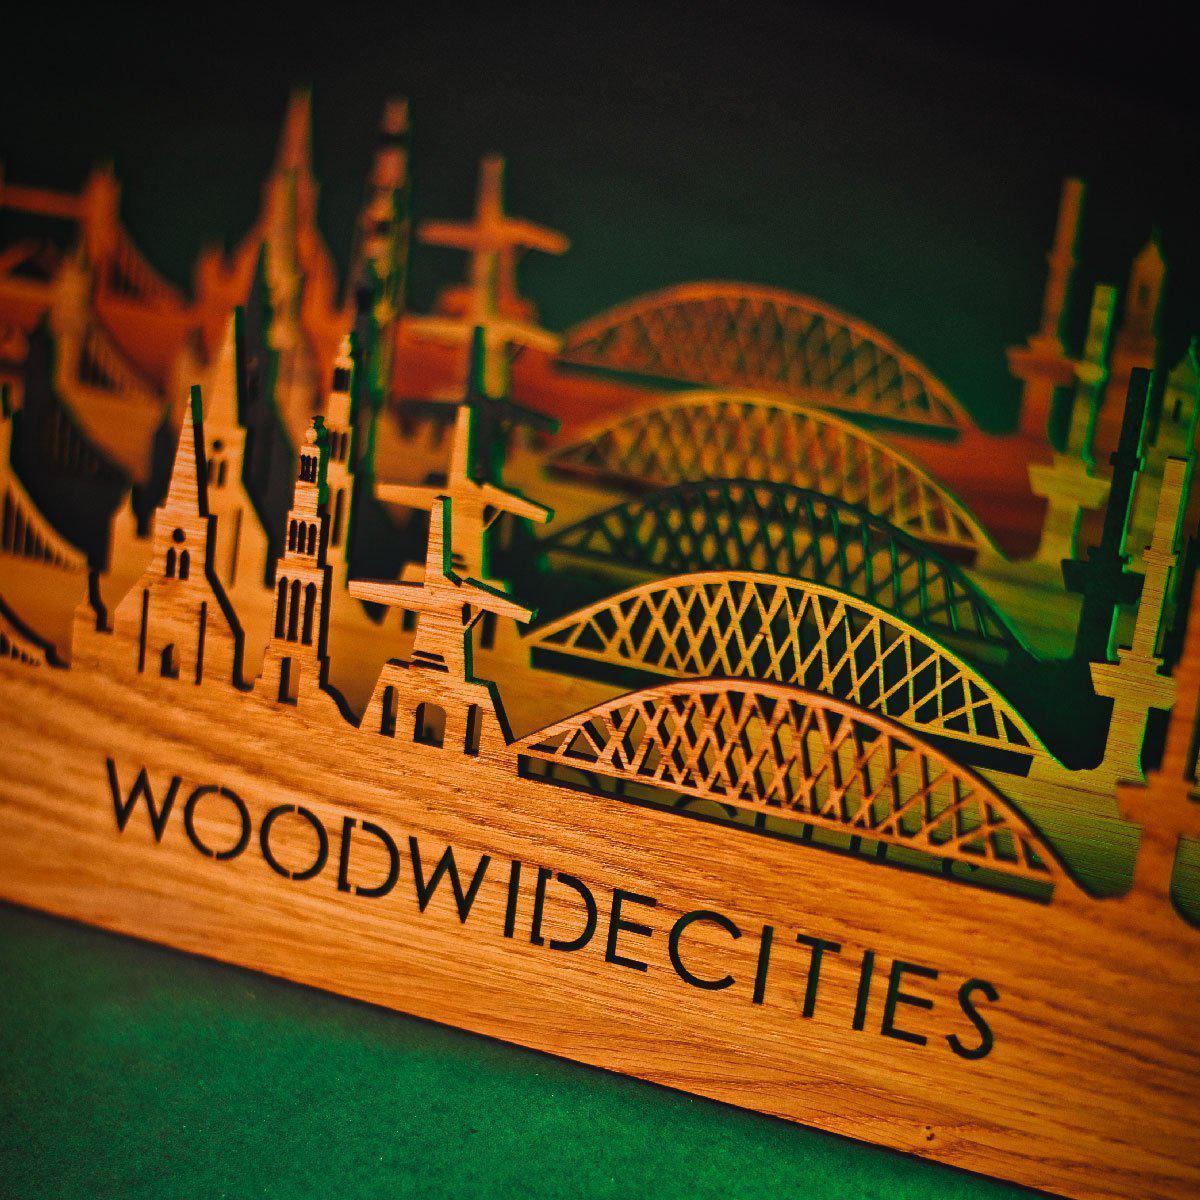 Skyline Klok Terneuzen Black houten cadeau wanddecoratie relatiegeschenk van WoodWideCities